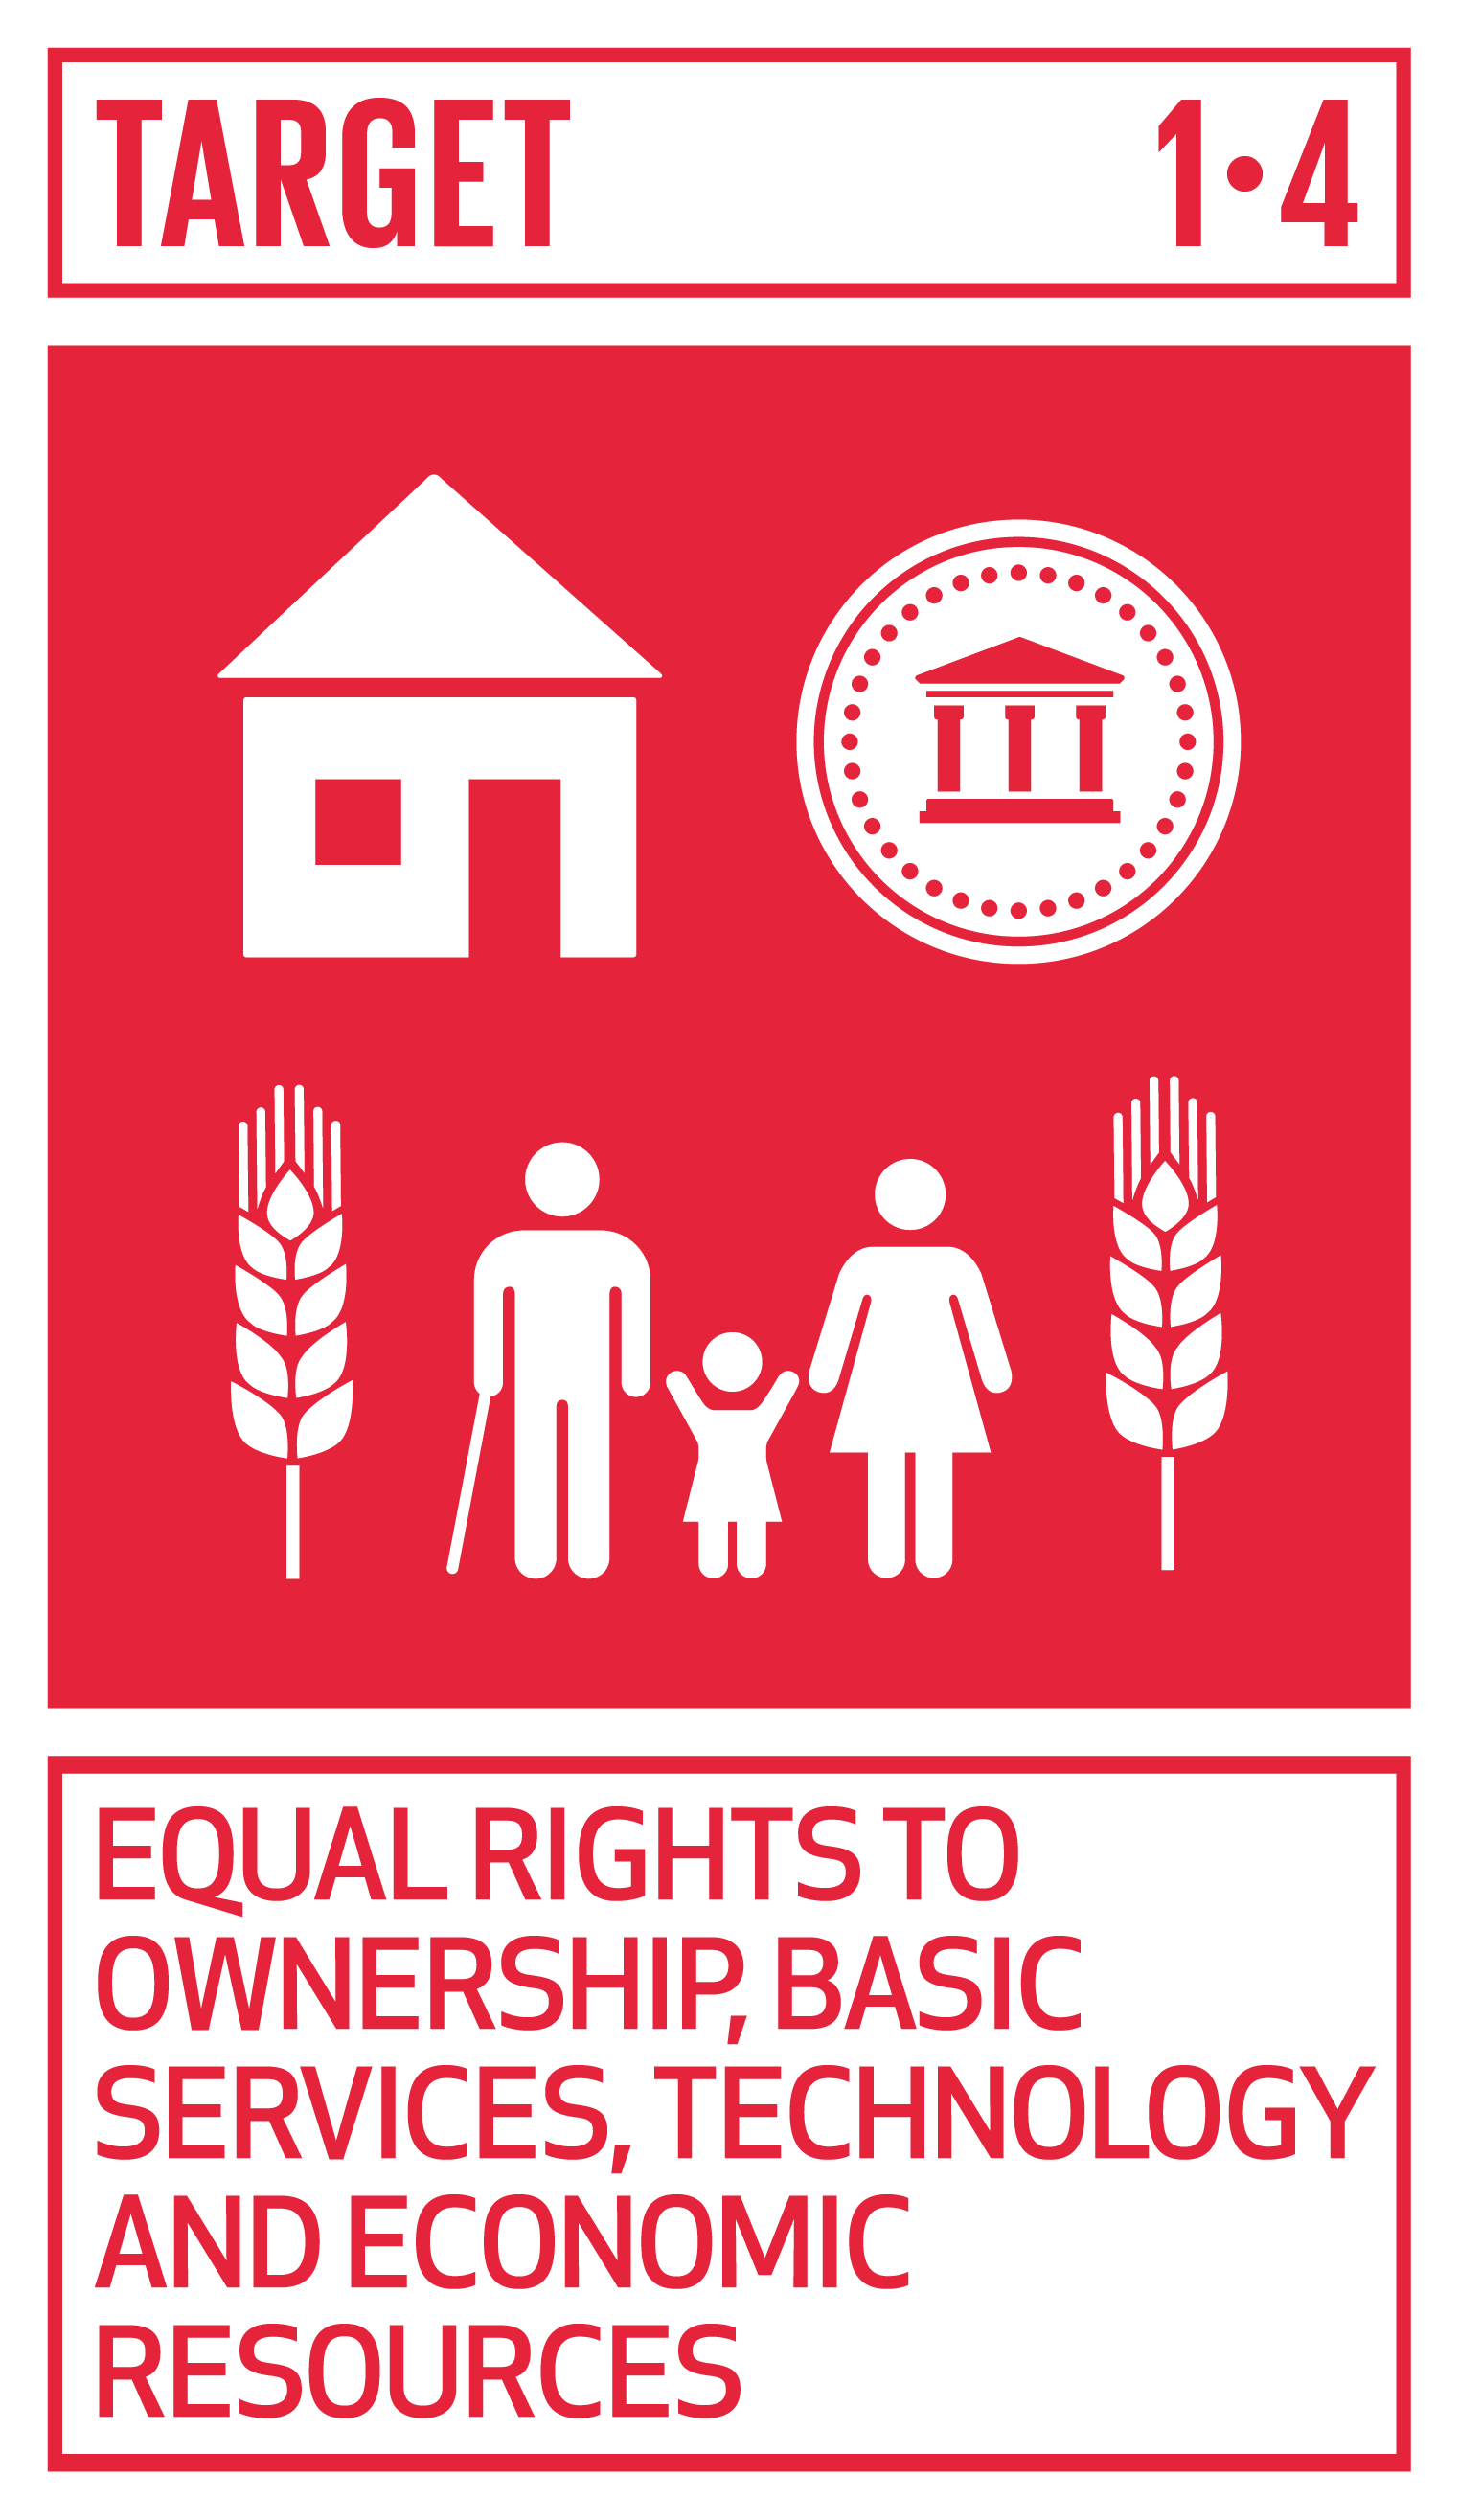 Goal,target,sdgs1消除貧窮－消除各地一切形式的貧窮,目標1.4所有權、基本服務、技術和經濟資源取得權利的平等